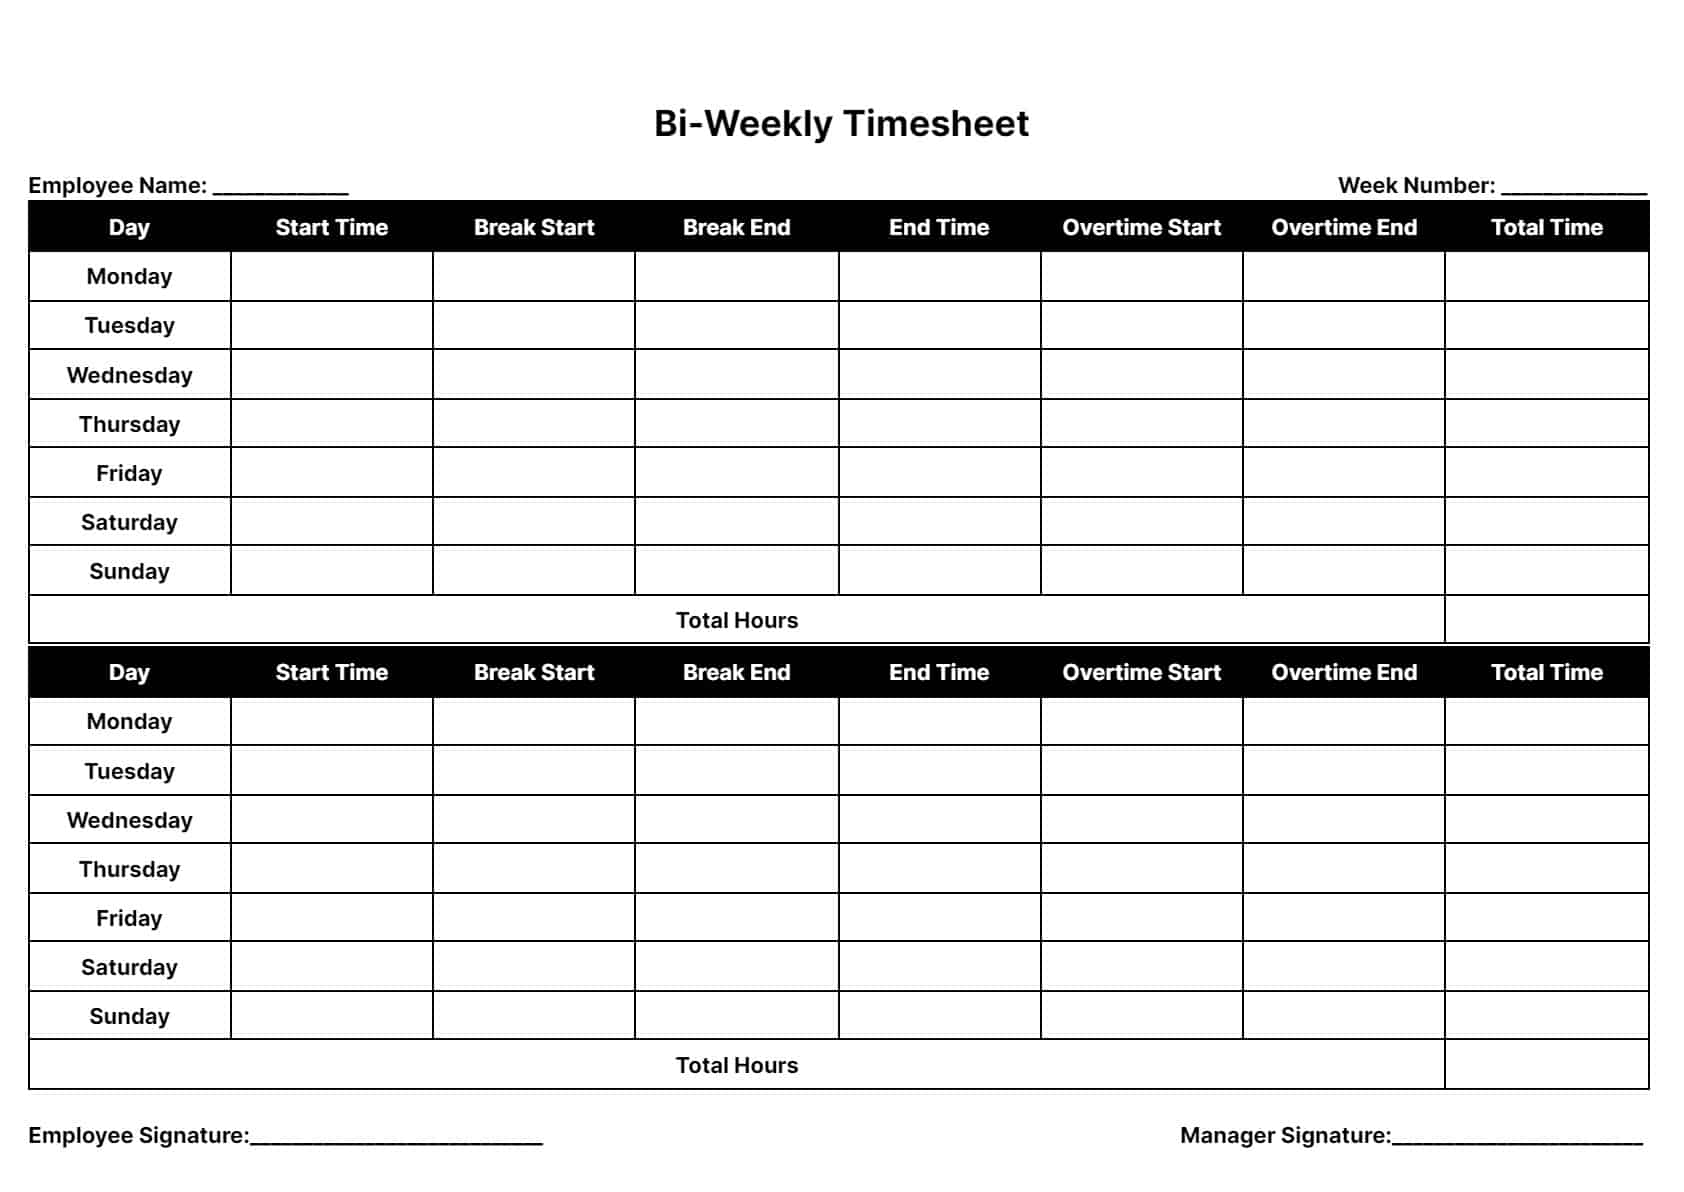 bi weekly timesheet template excel